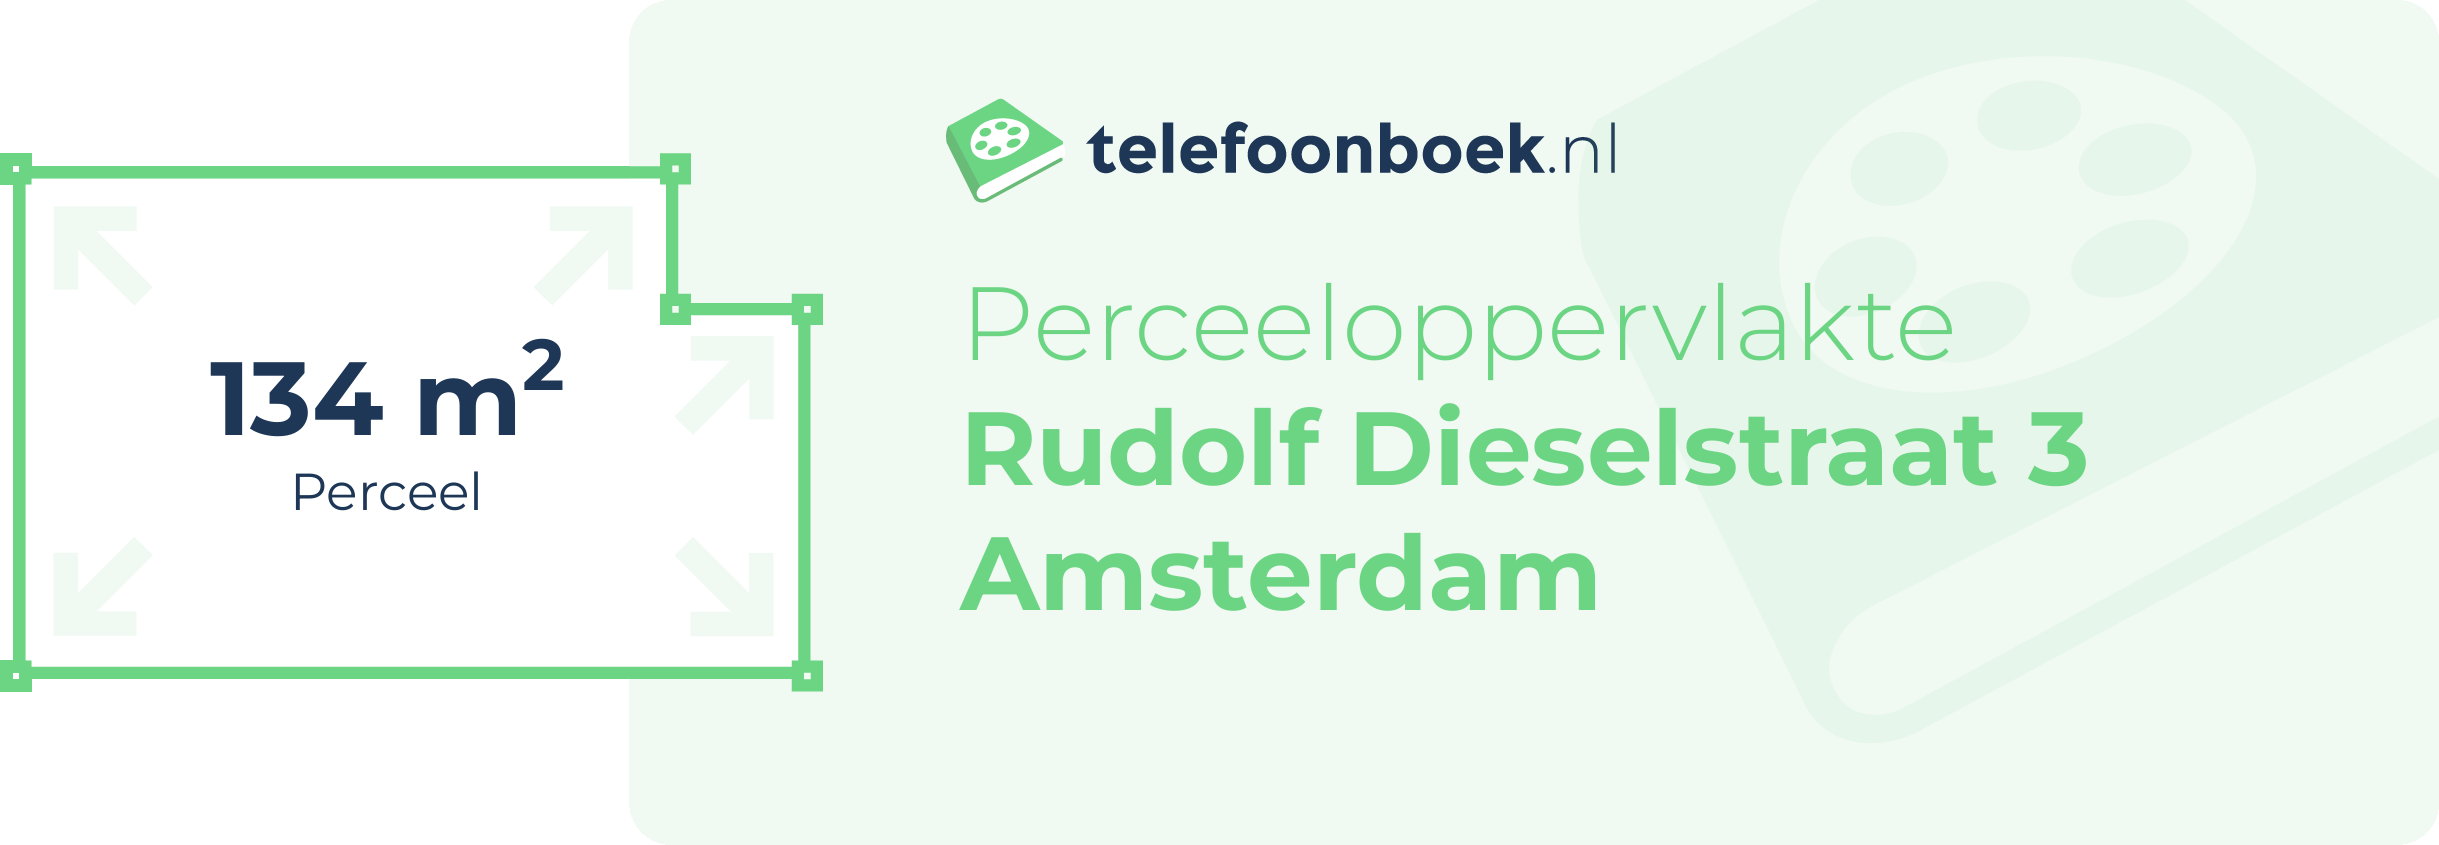 Perceeloppervlakte Rudolf Dieselstraat 3 Amsterdam